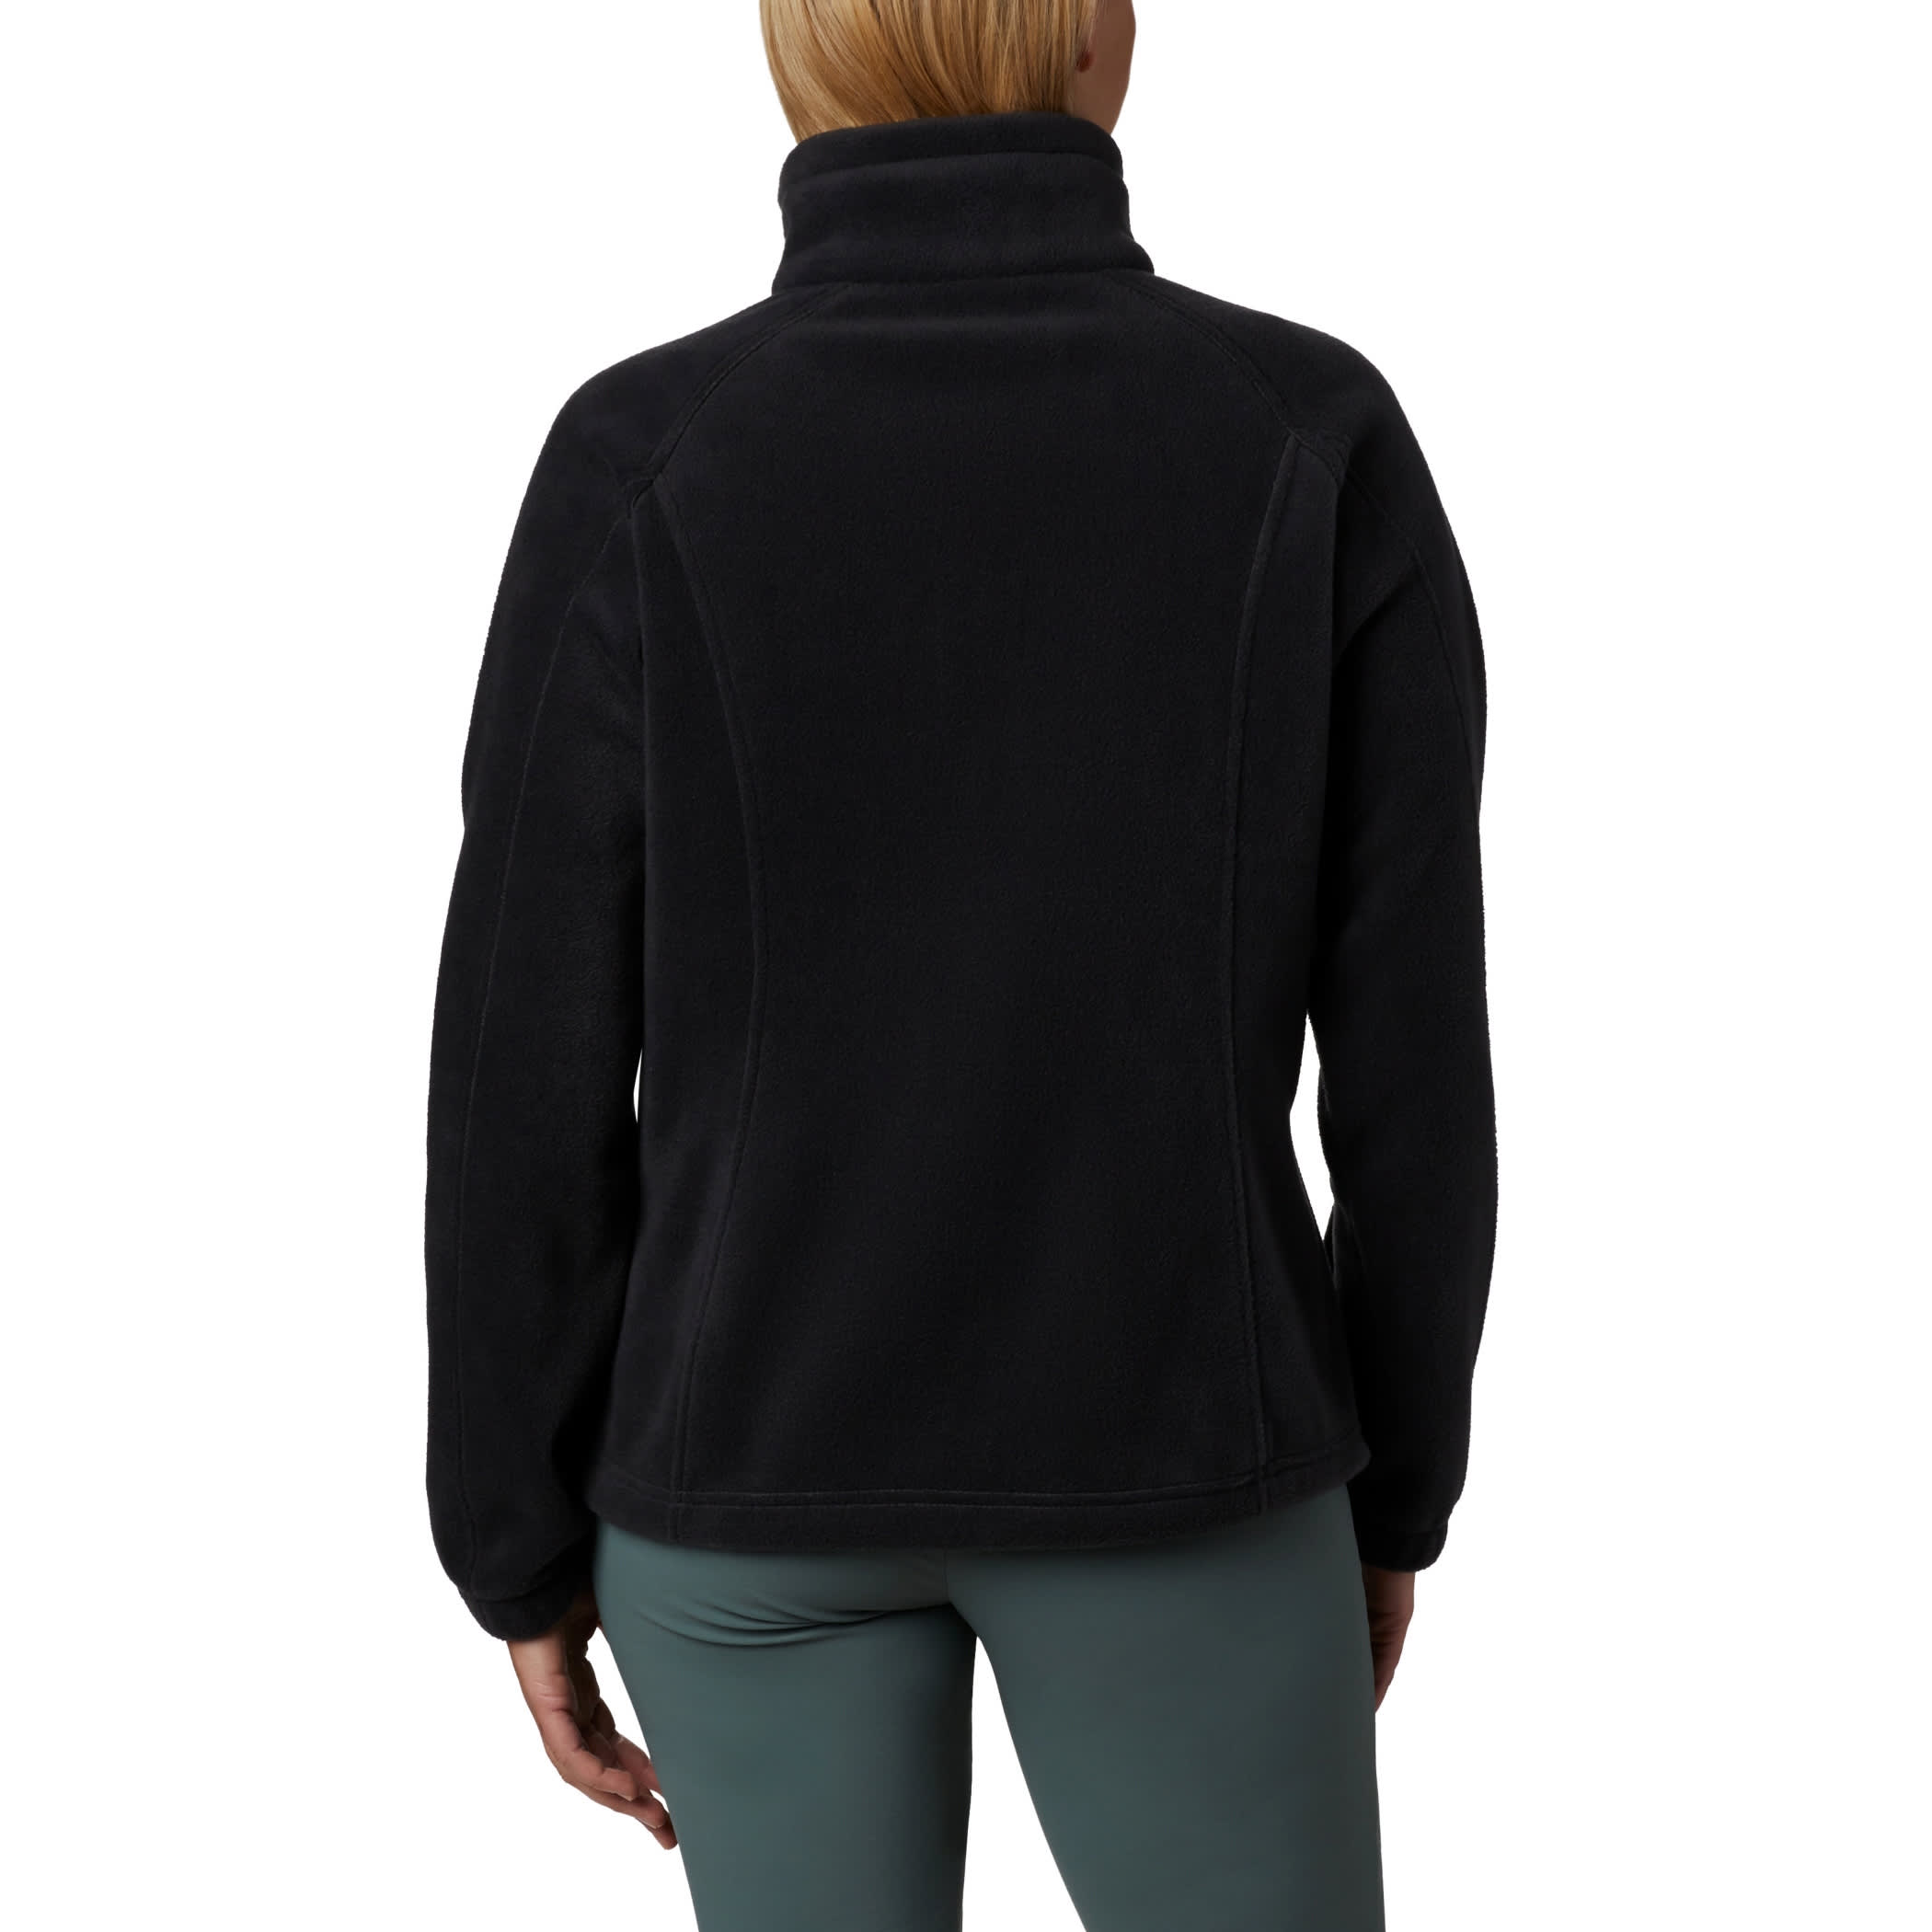 Columbia® Women’s Benton Springs™ Full Zip Fleece Jacket